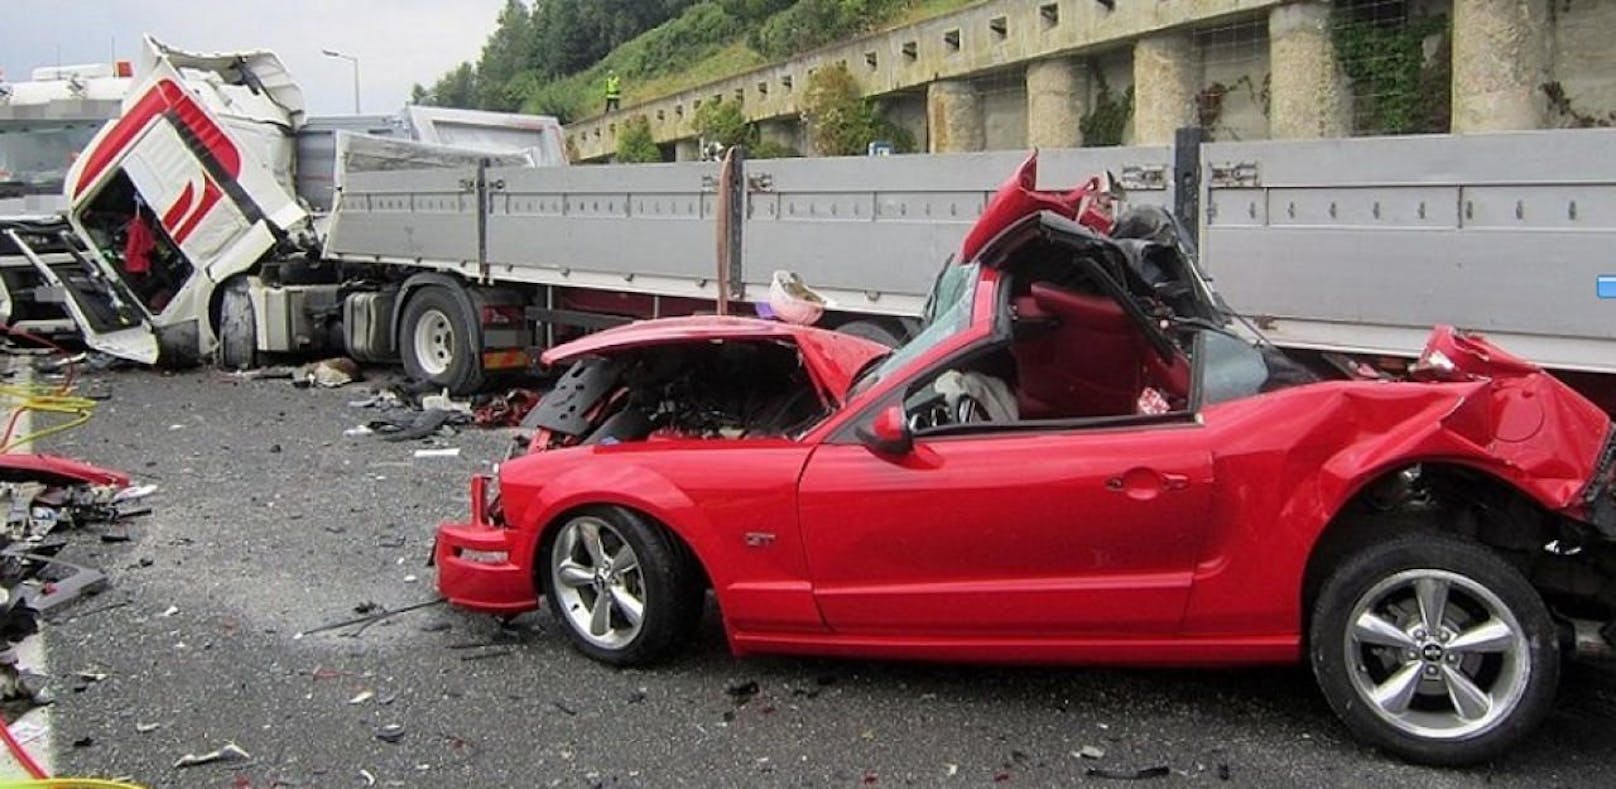 Cabrio-Beifahrerin stirbt bei Auffahrunfall auf S6.